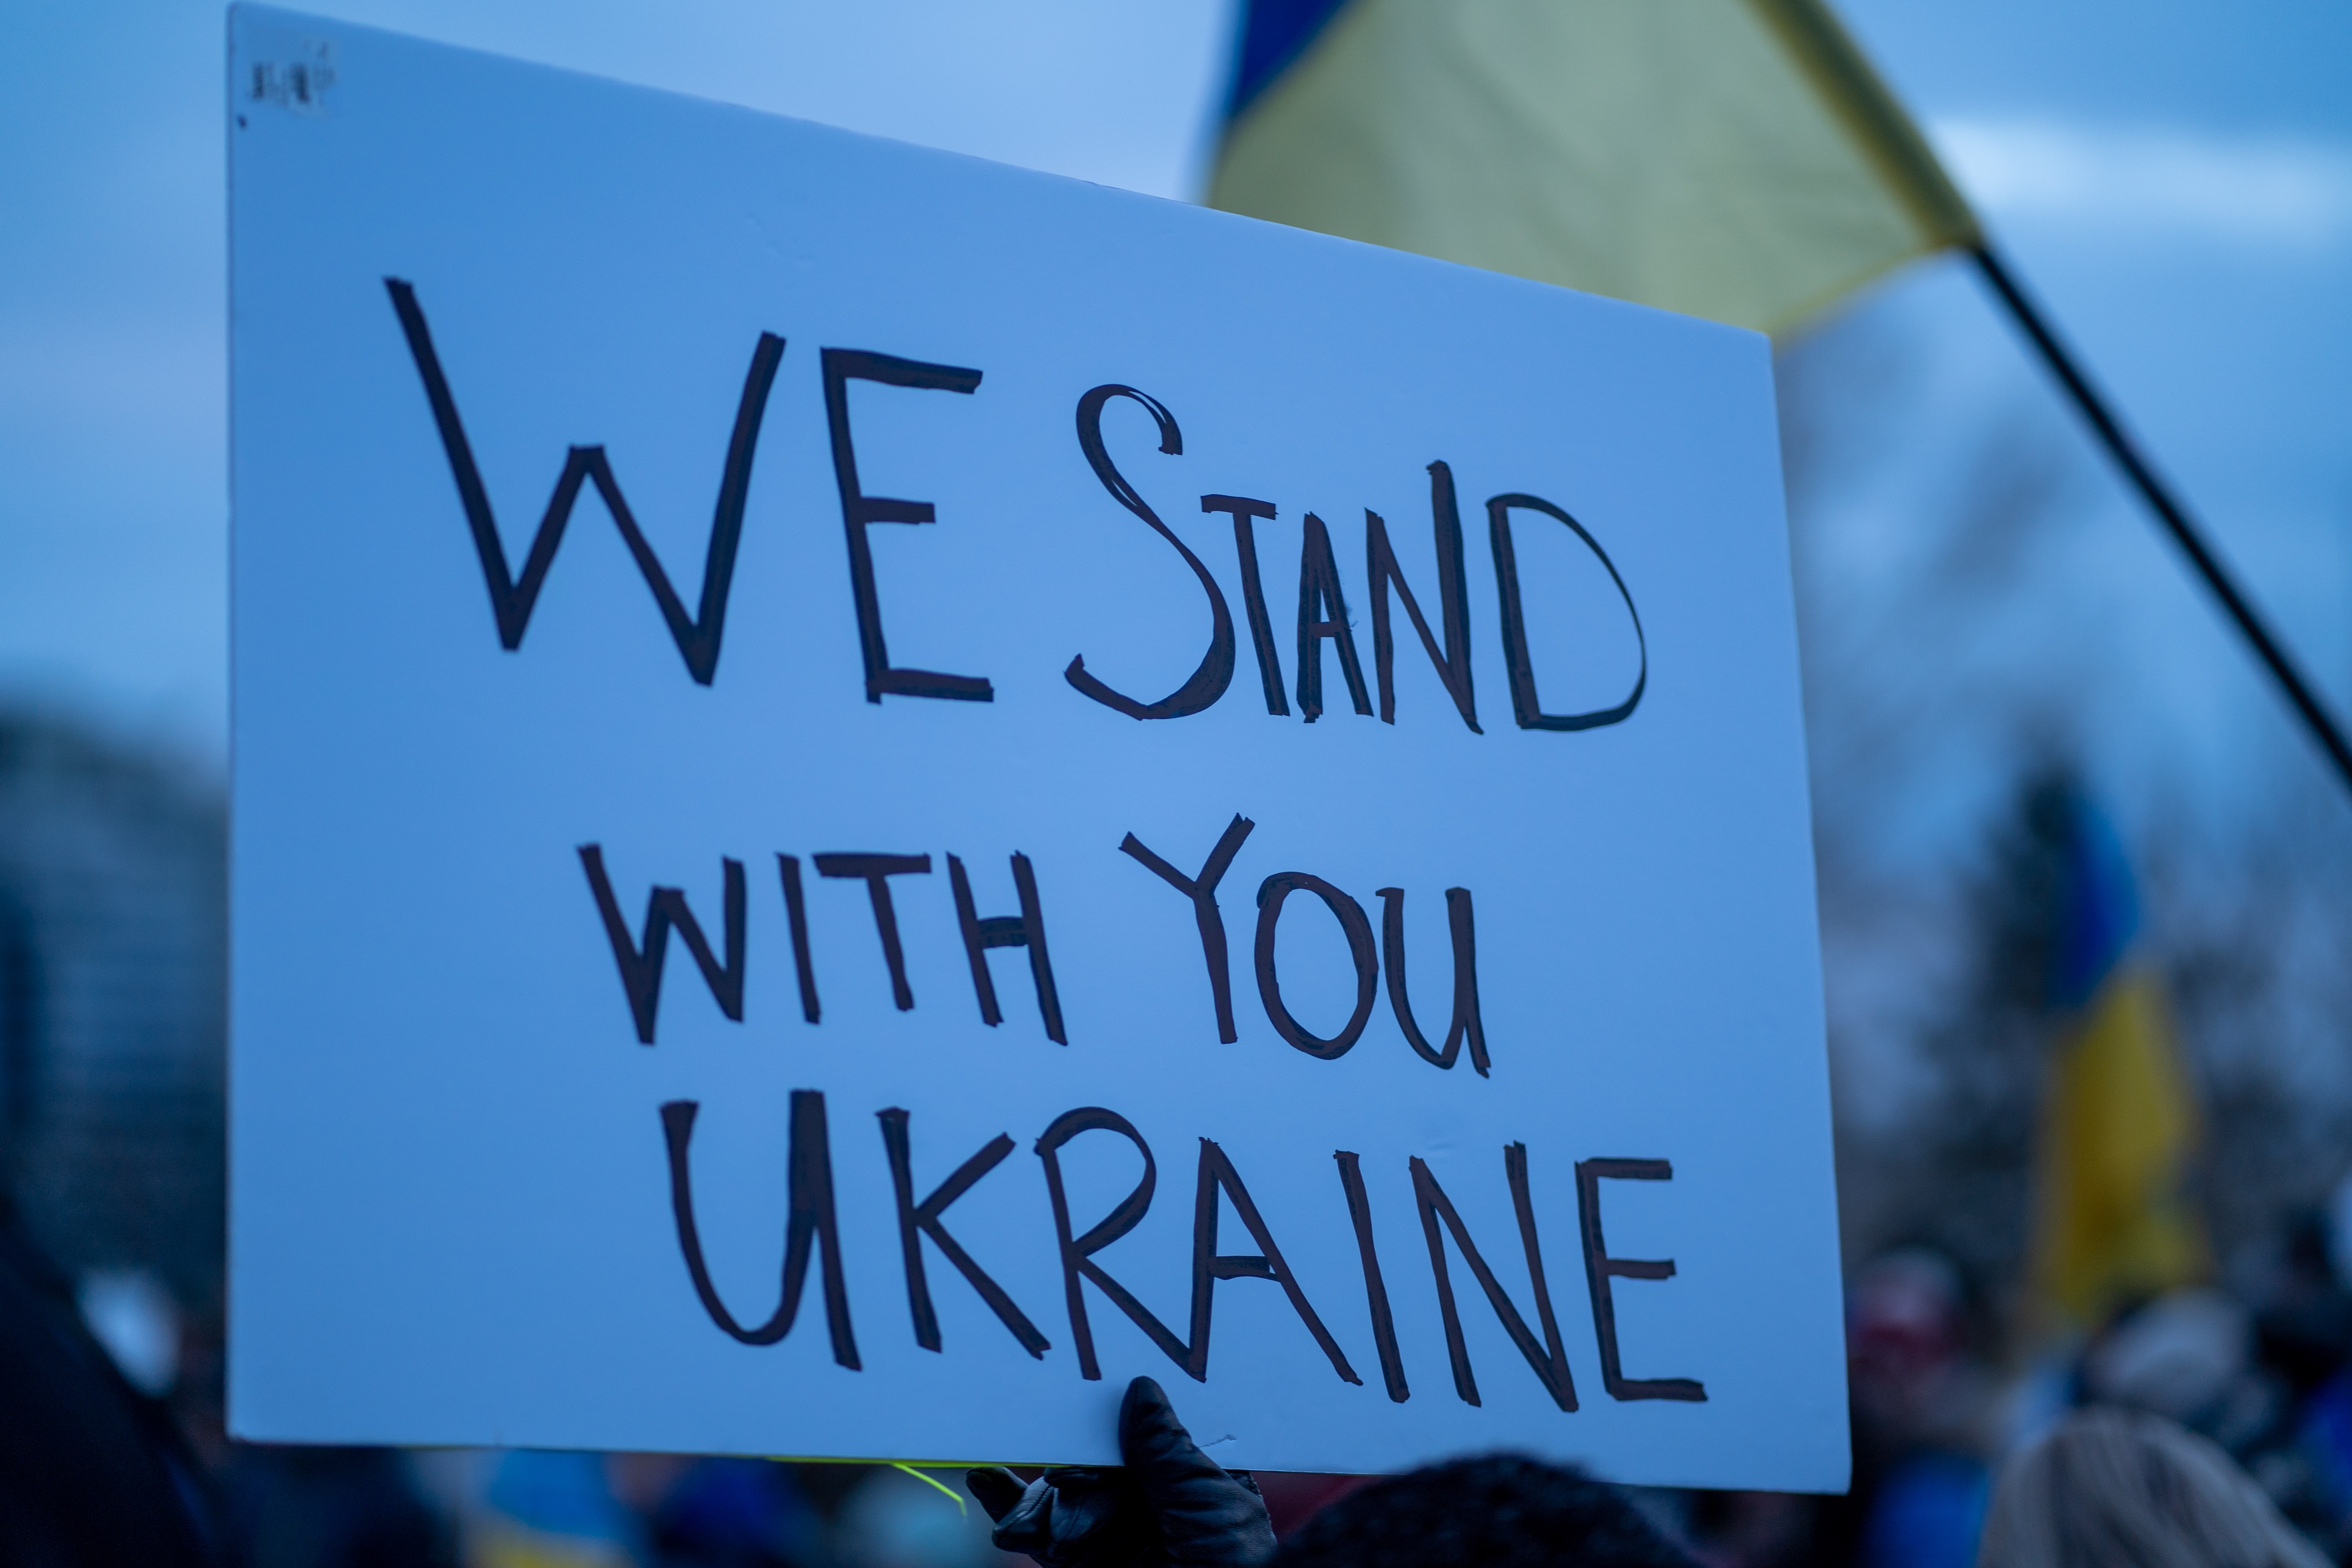 Pappschild mit der Aufschrift "We stand with you Ukraine"